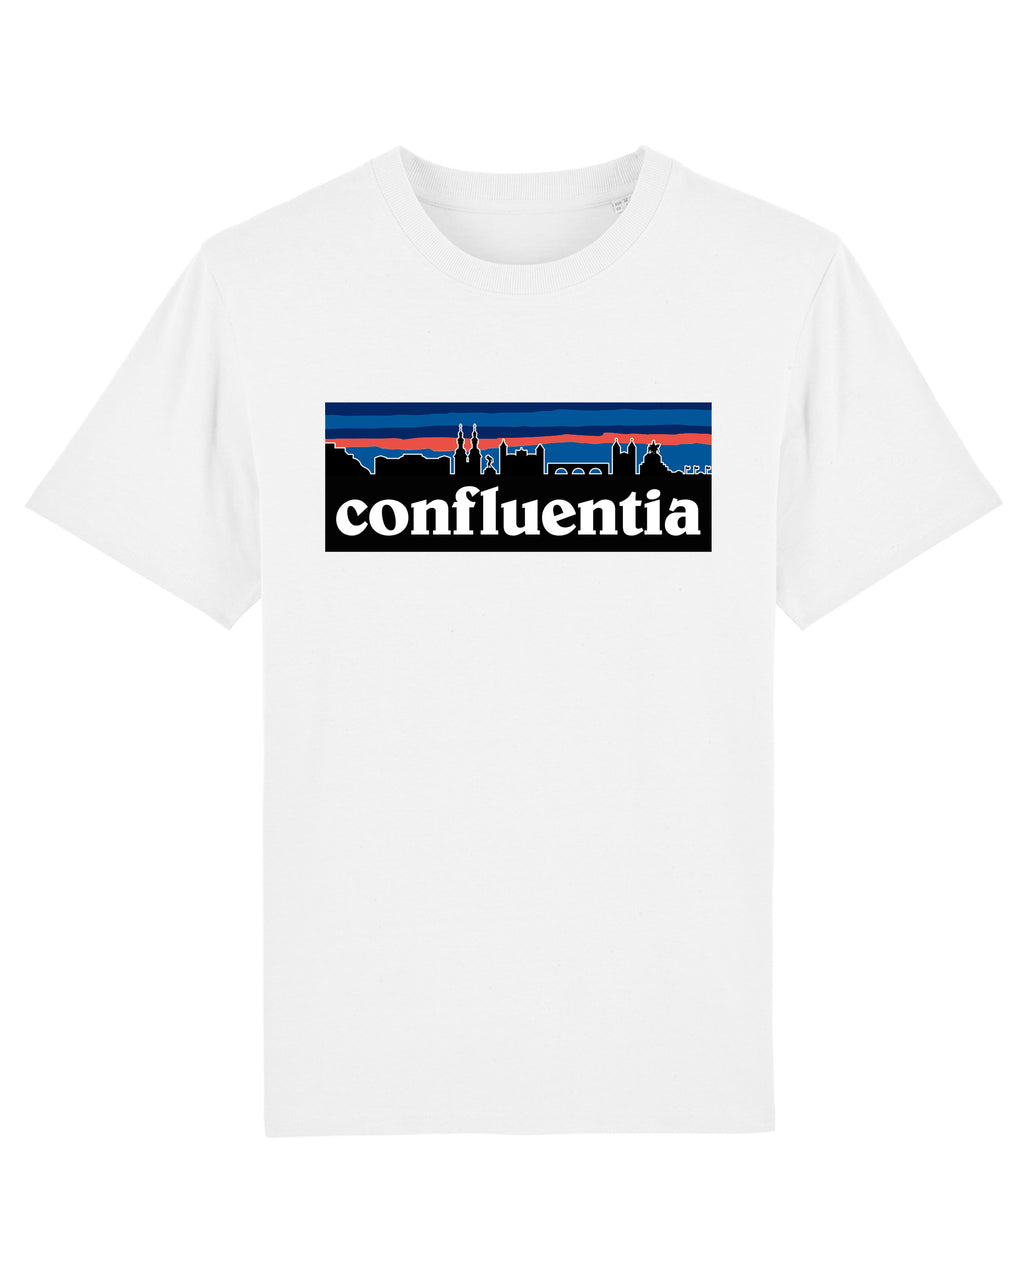 Confluentia Skyline T-Shirt